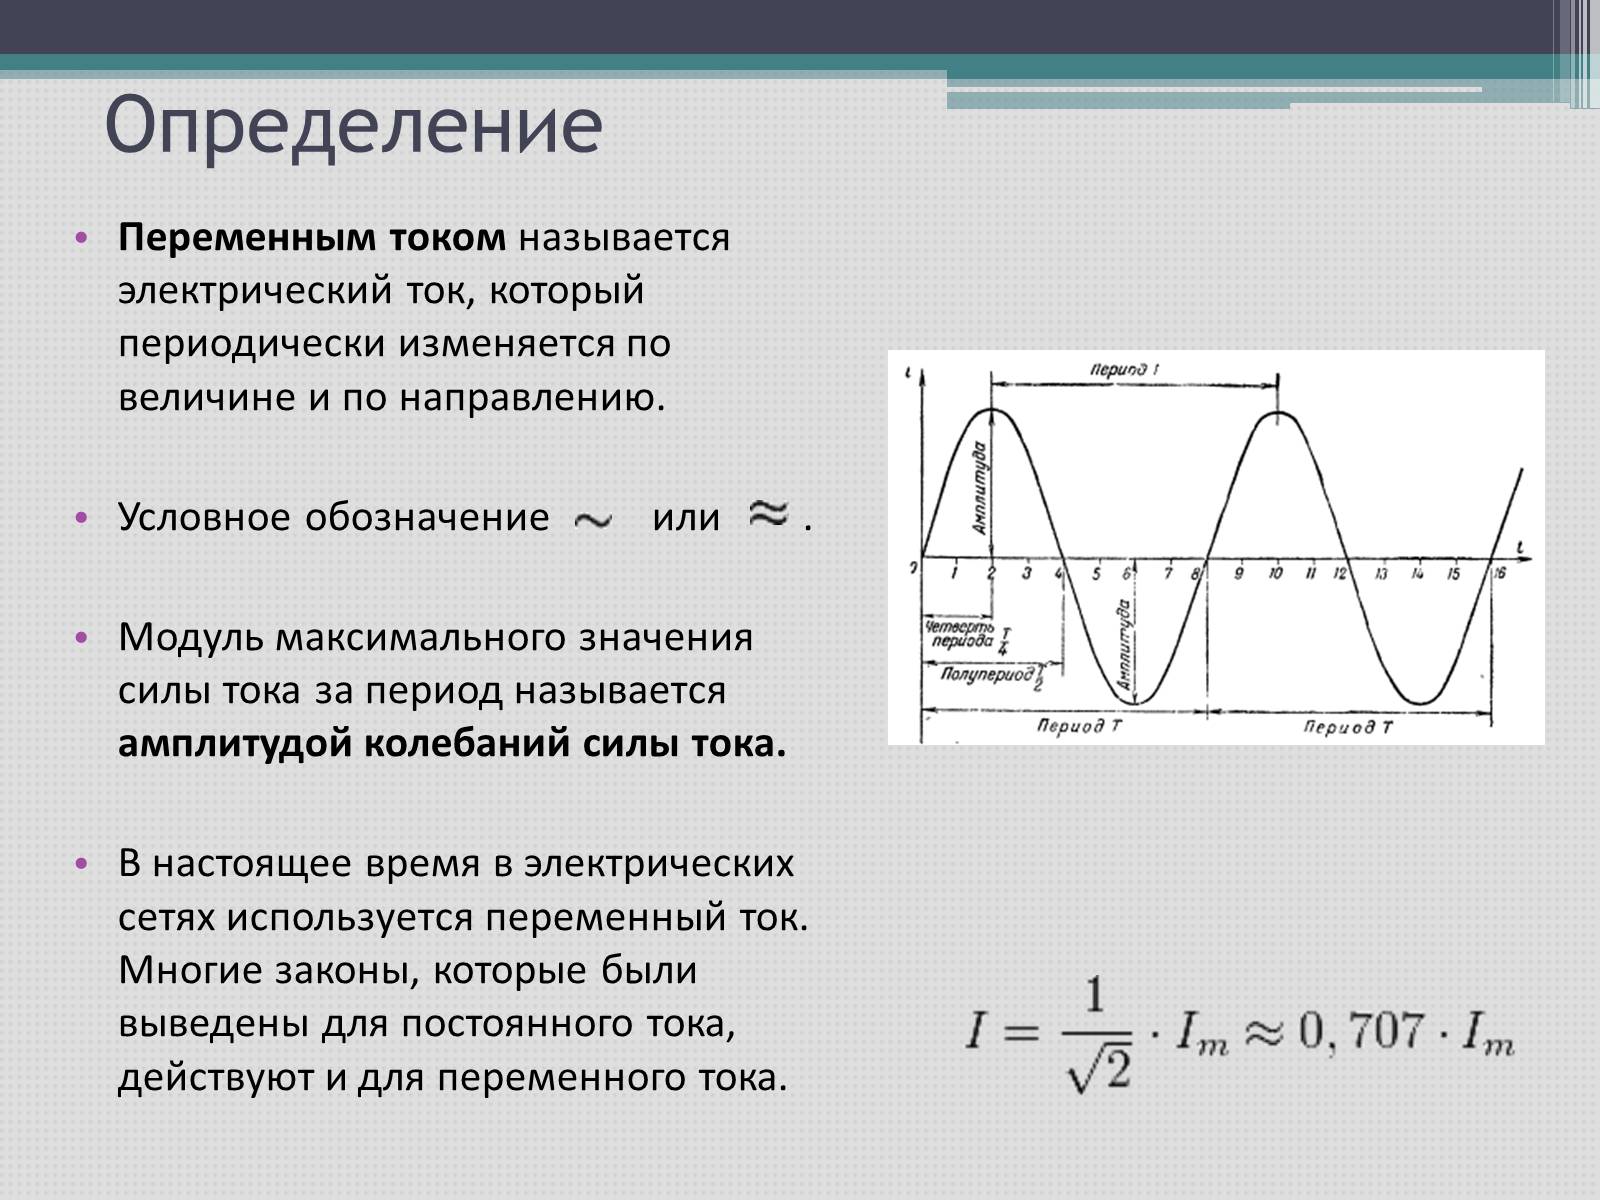 Стандартная частота промышленного тока в россии. Переменные токи характеристика. Как называется график переменного тока. Переменный электрический ток определение. Переменный ток график переменного тока.